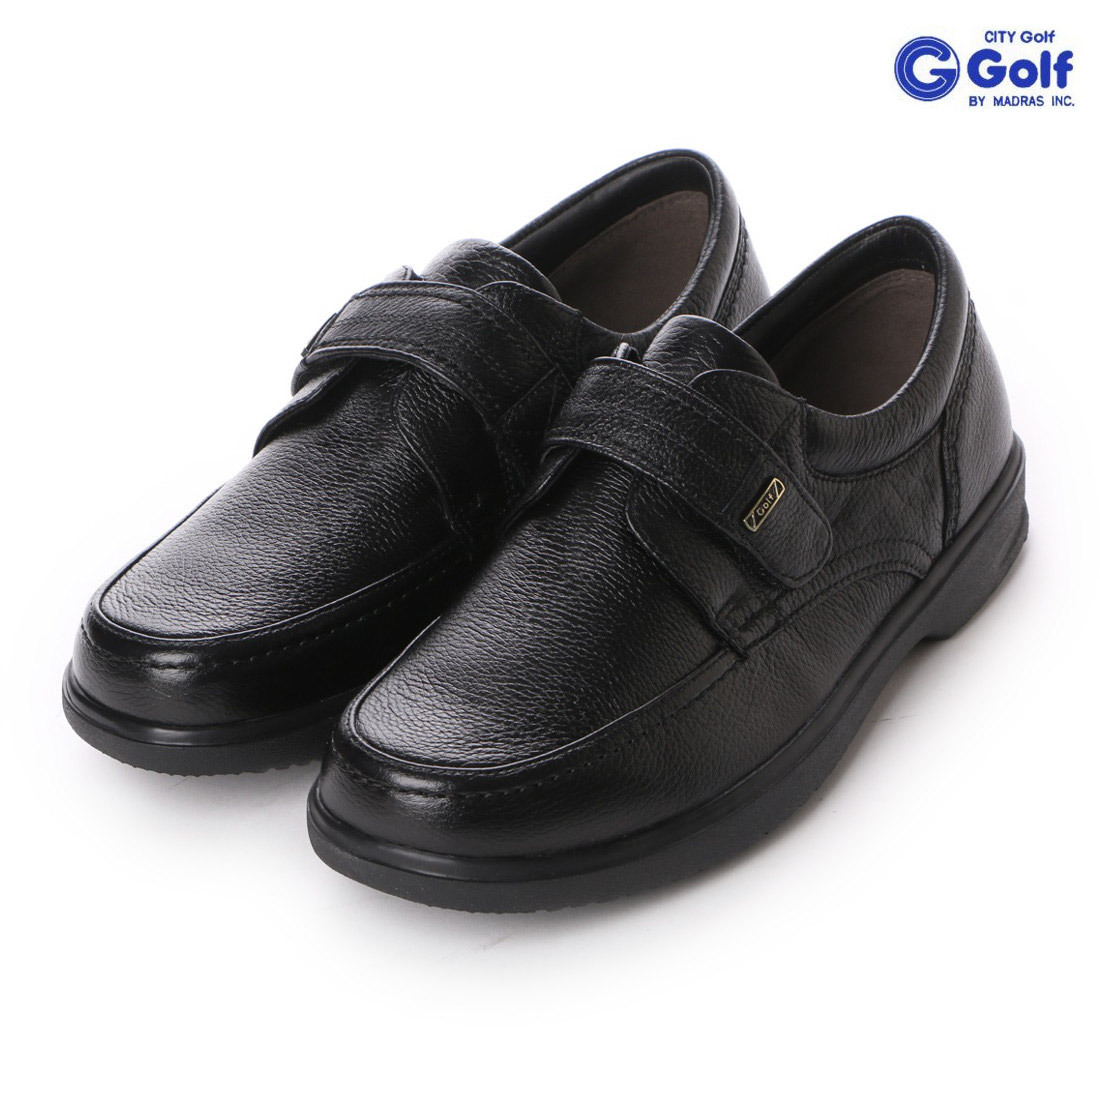 ▲シティ ゴルフ City Golf GF904 メンズ スリッポン カジュアル シューズ 本革 ブラック Black 黒 24.5cm (0910010394-bk-s245)